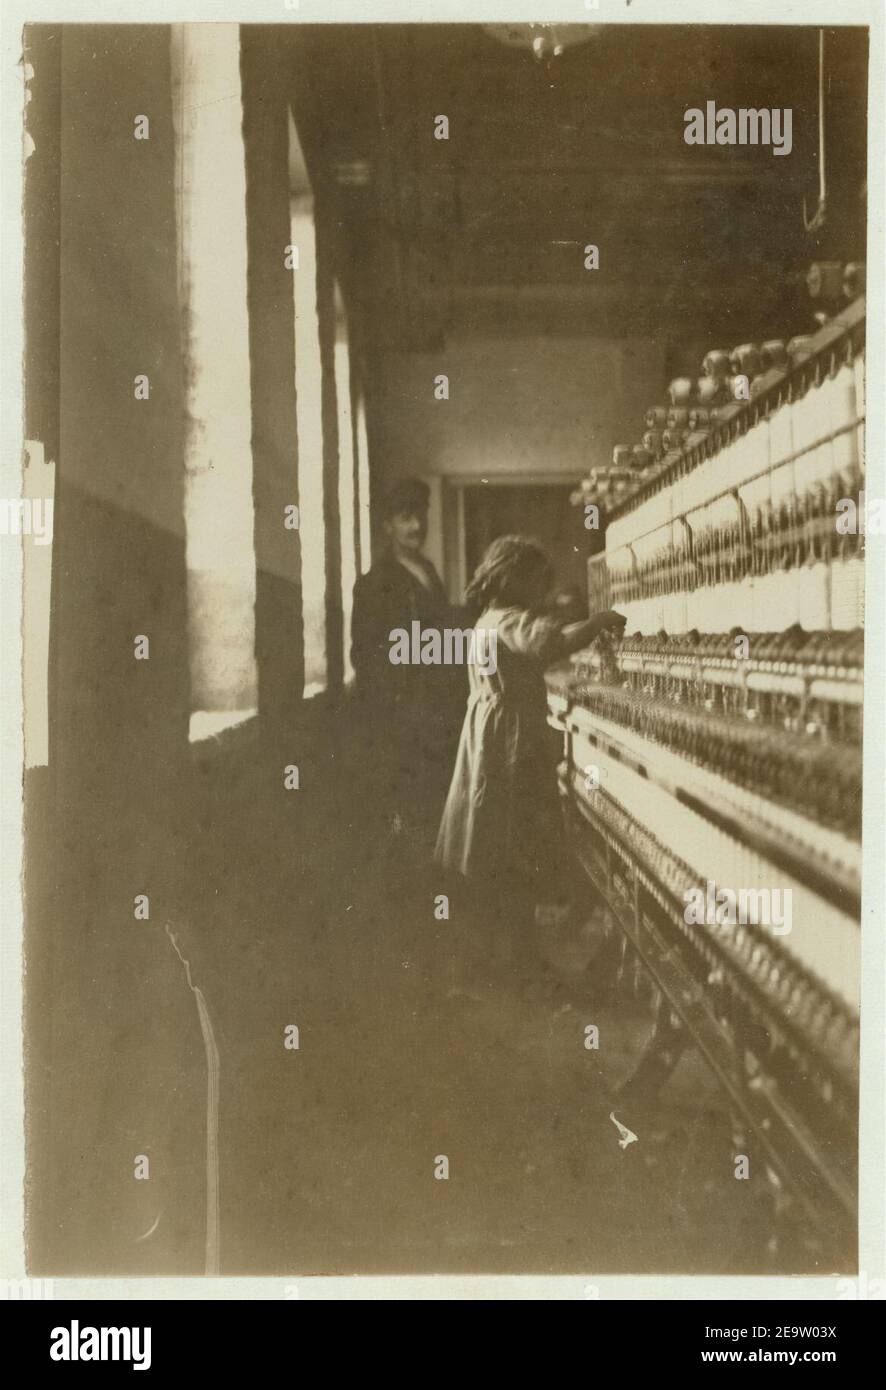 Nom- petite fille (48 pouces de haut) travaille à Amoskeag Mfg Co., Manchester, N.H. Elle semblait avoir 11 ou 12 ans. Photo prise à midi, le 25 mai 1909. Banque D'Images